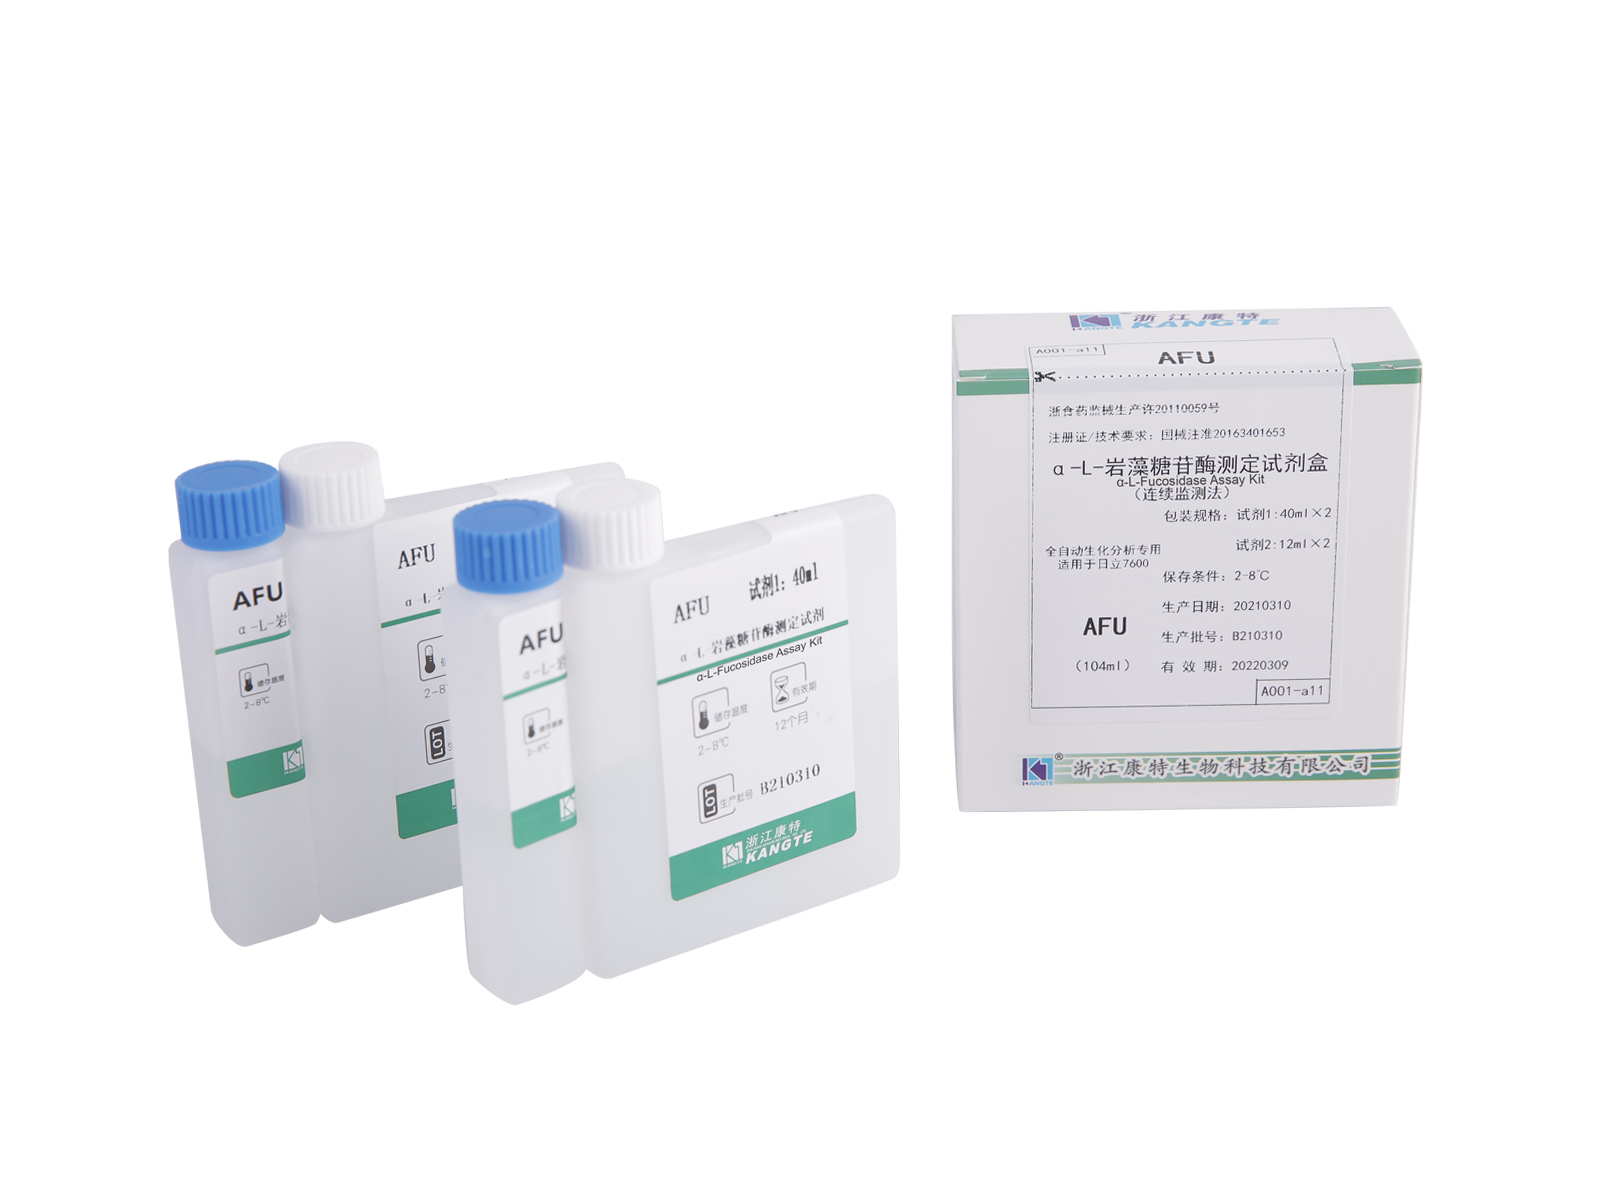 【AFU】 Kit de ensaio de α-L-fucosidase (método de monitoramento contínuo)